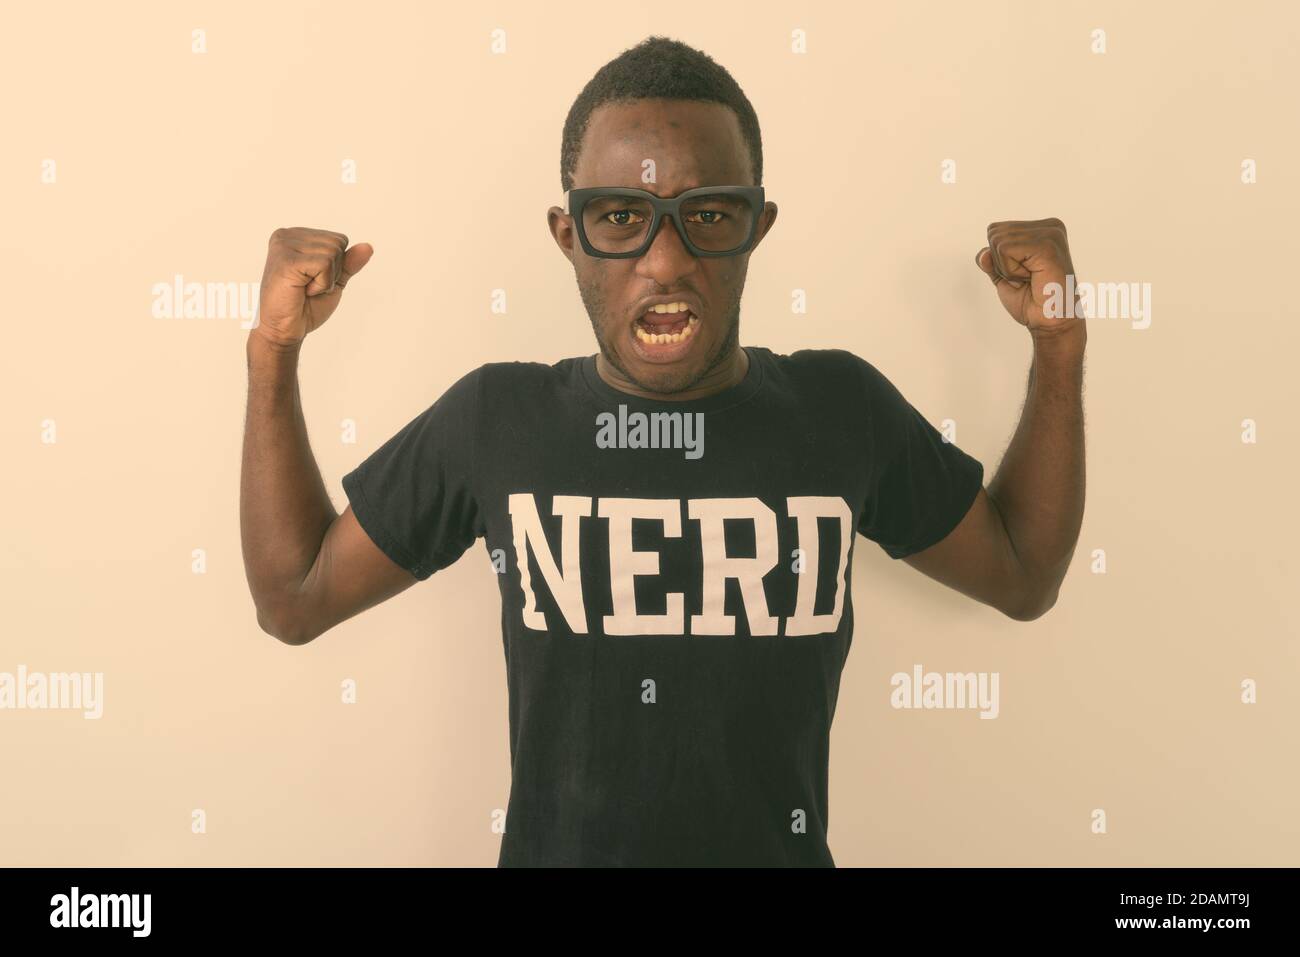 Studio-Aufnahme von jungen schwarzen afrikanischen Geek Mann trägt Nerd shirt, während er seine Arme beugt und Bizeps gegen Weiß zeigt Hintergrund Stockfoto